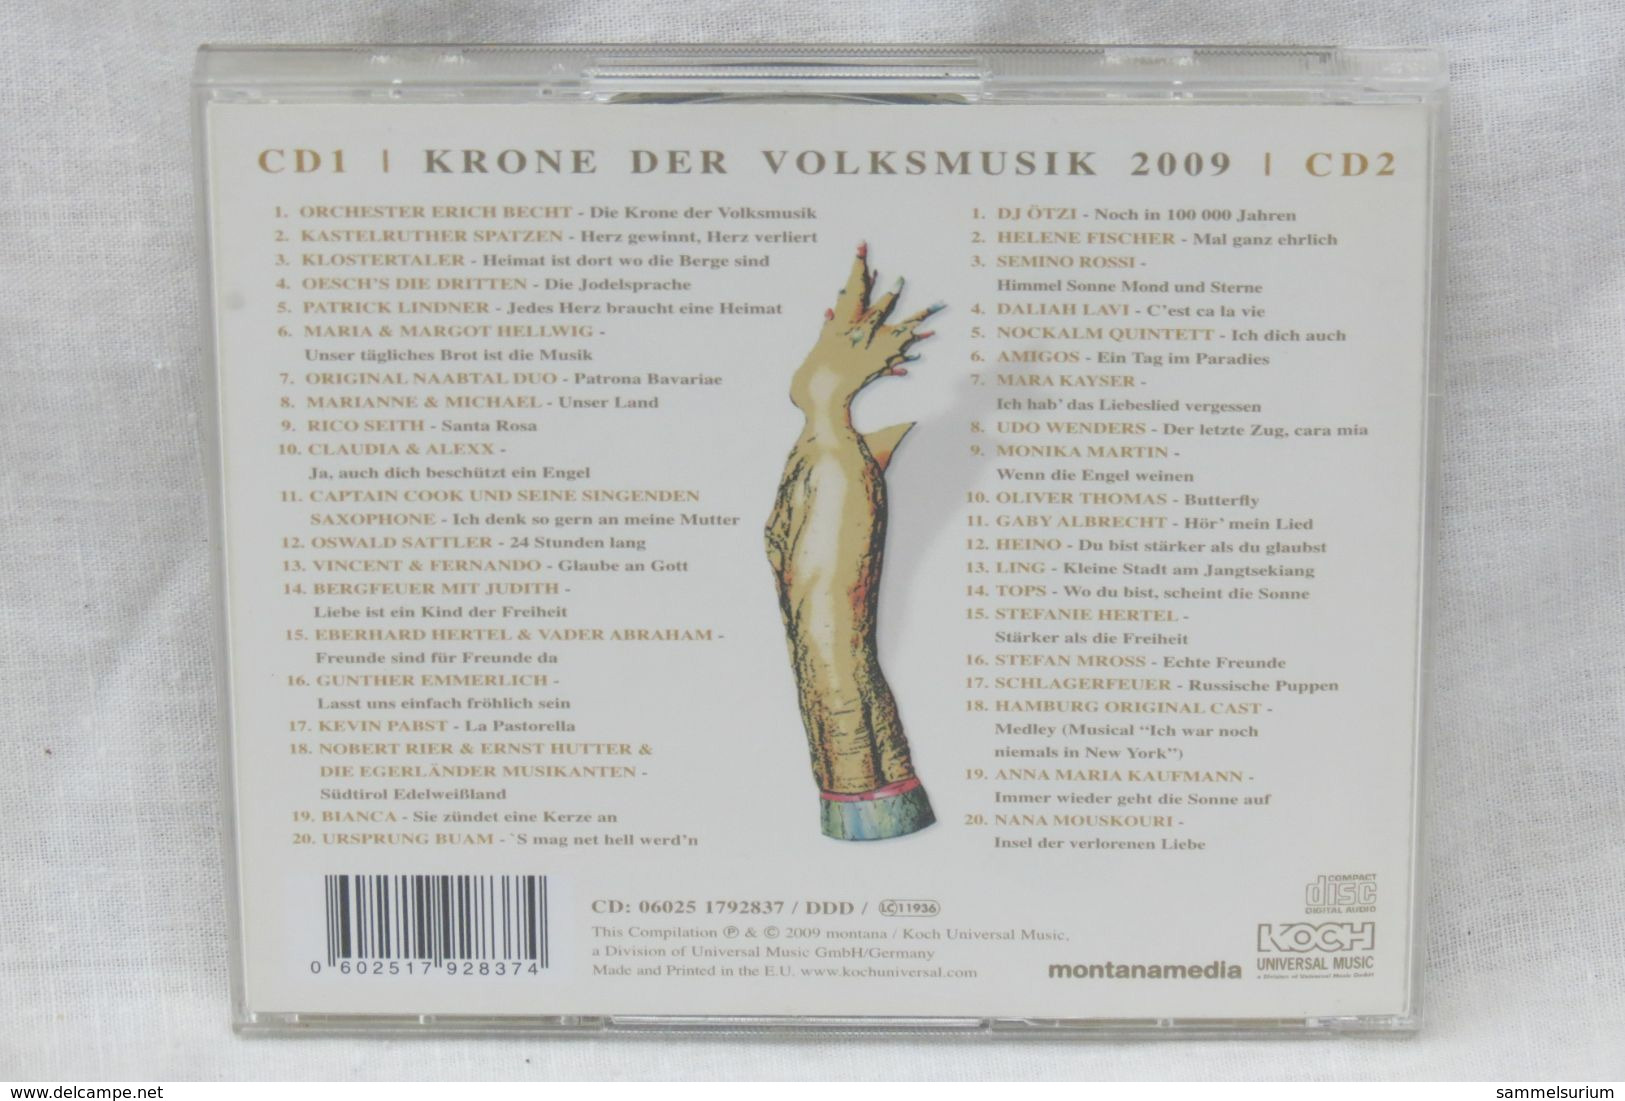 2 CDs "Krone Der Volksmusik 2009" Das Beste Vom Besten - Sonstige - Deutsche Musik